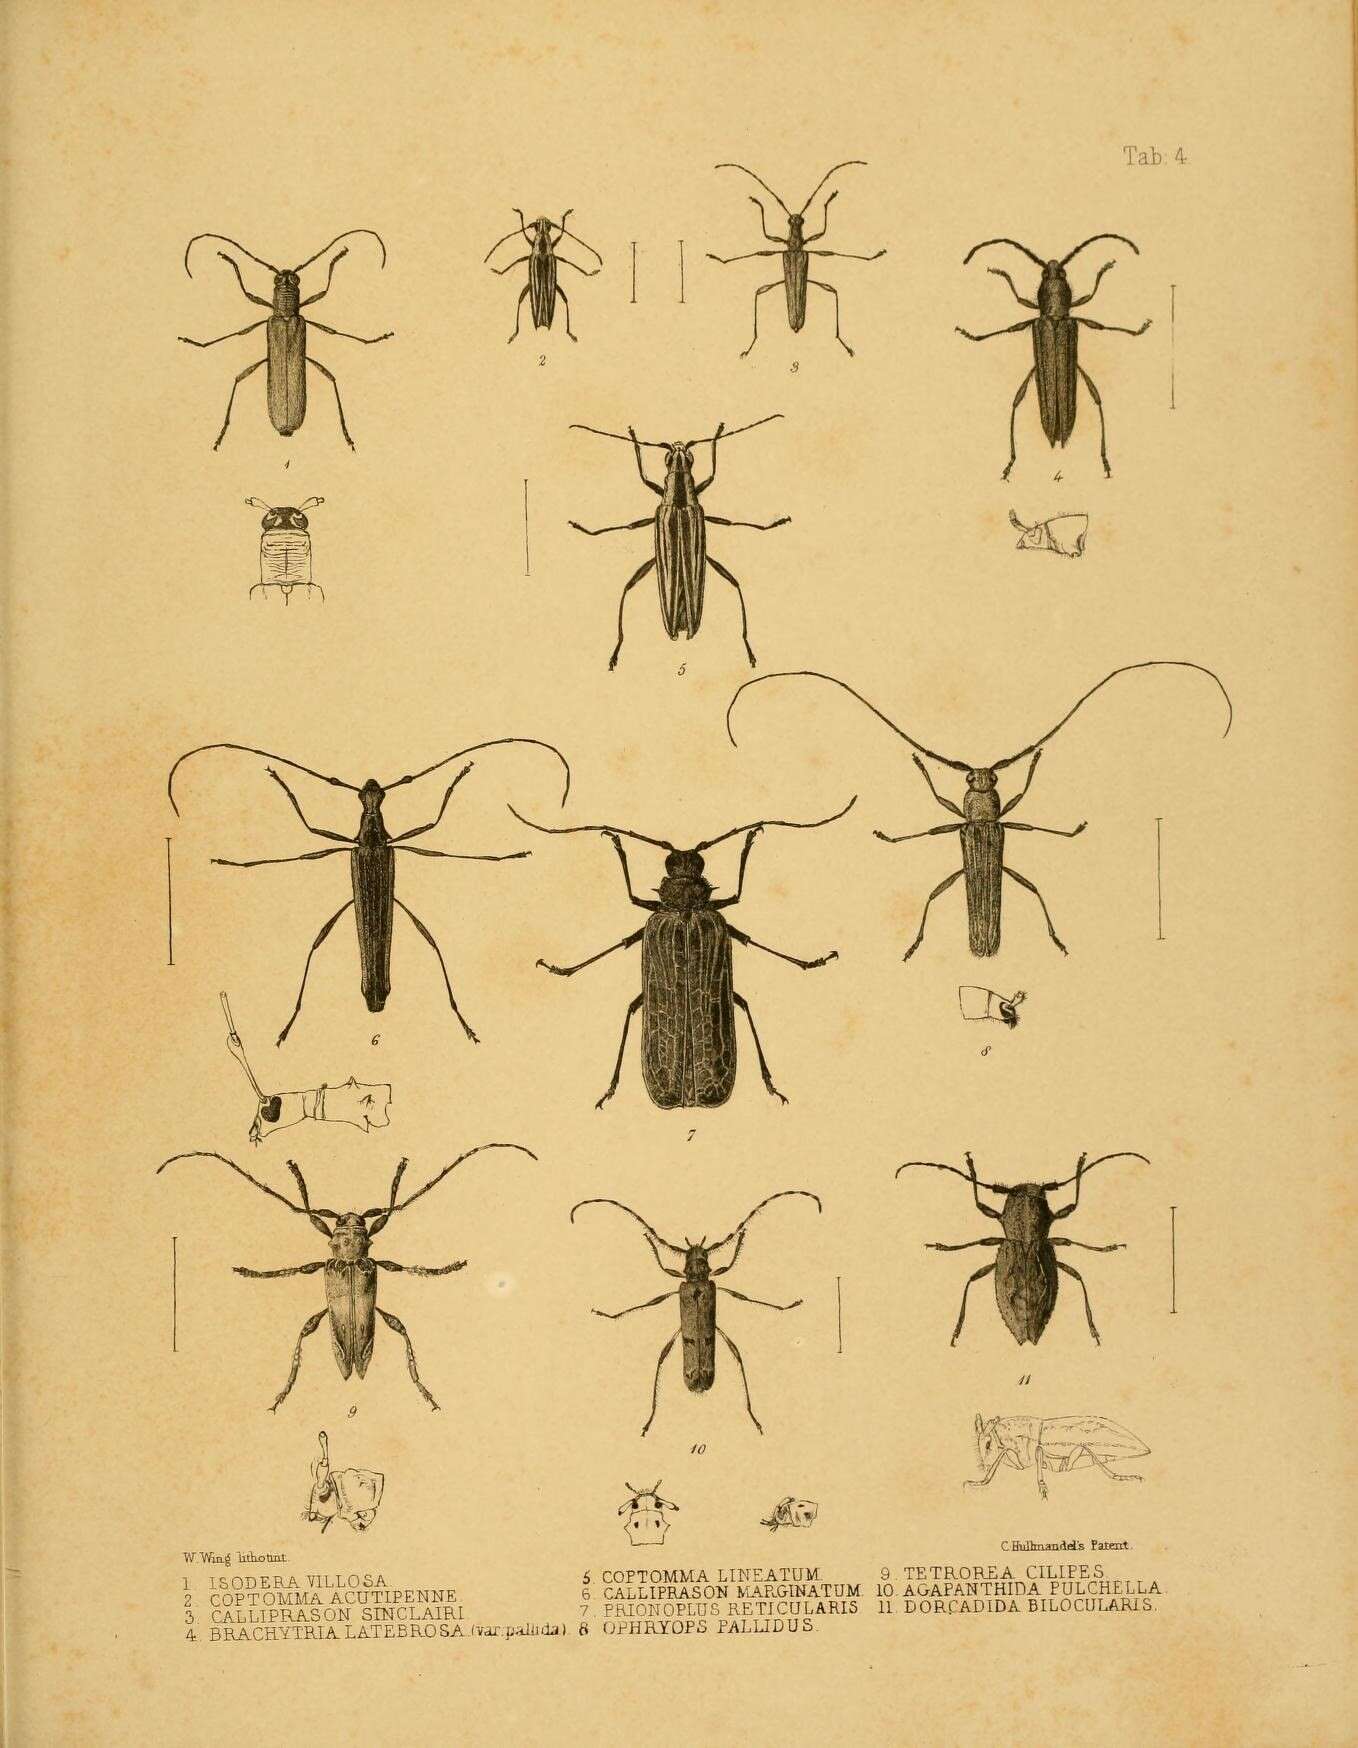 Image of Calliprason sinclairi (White 1843)